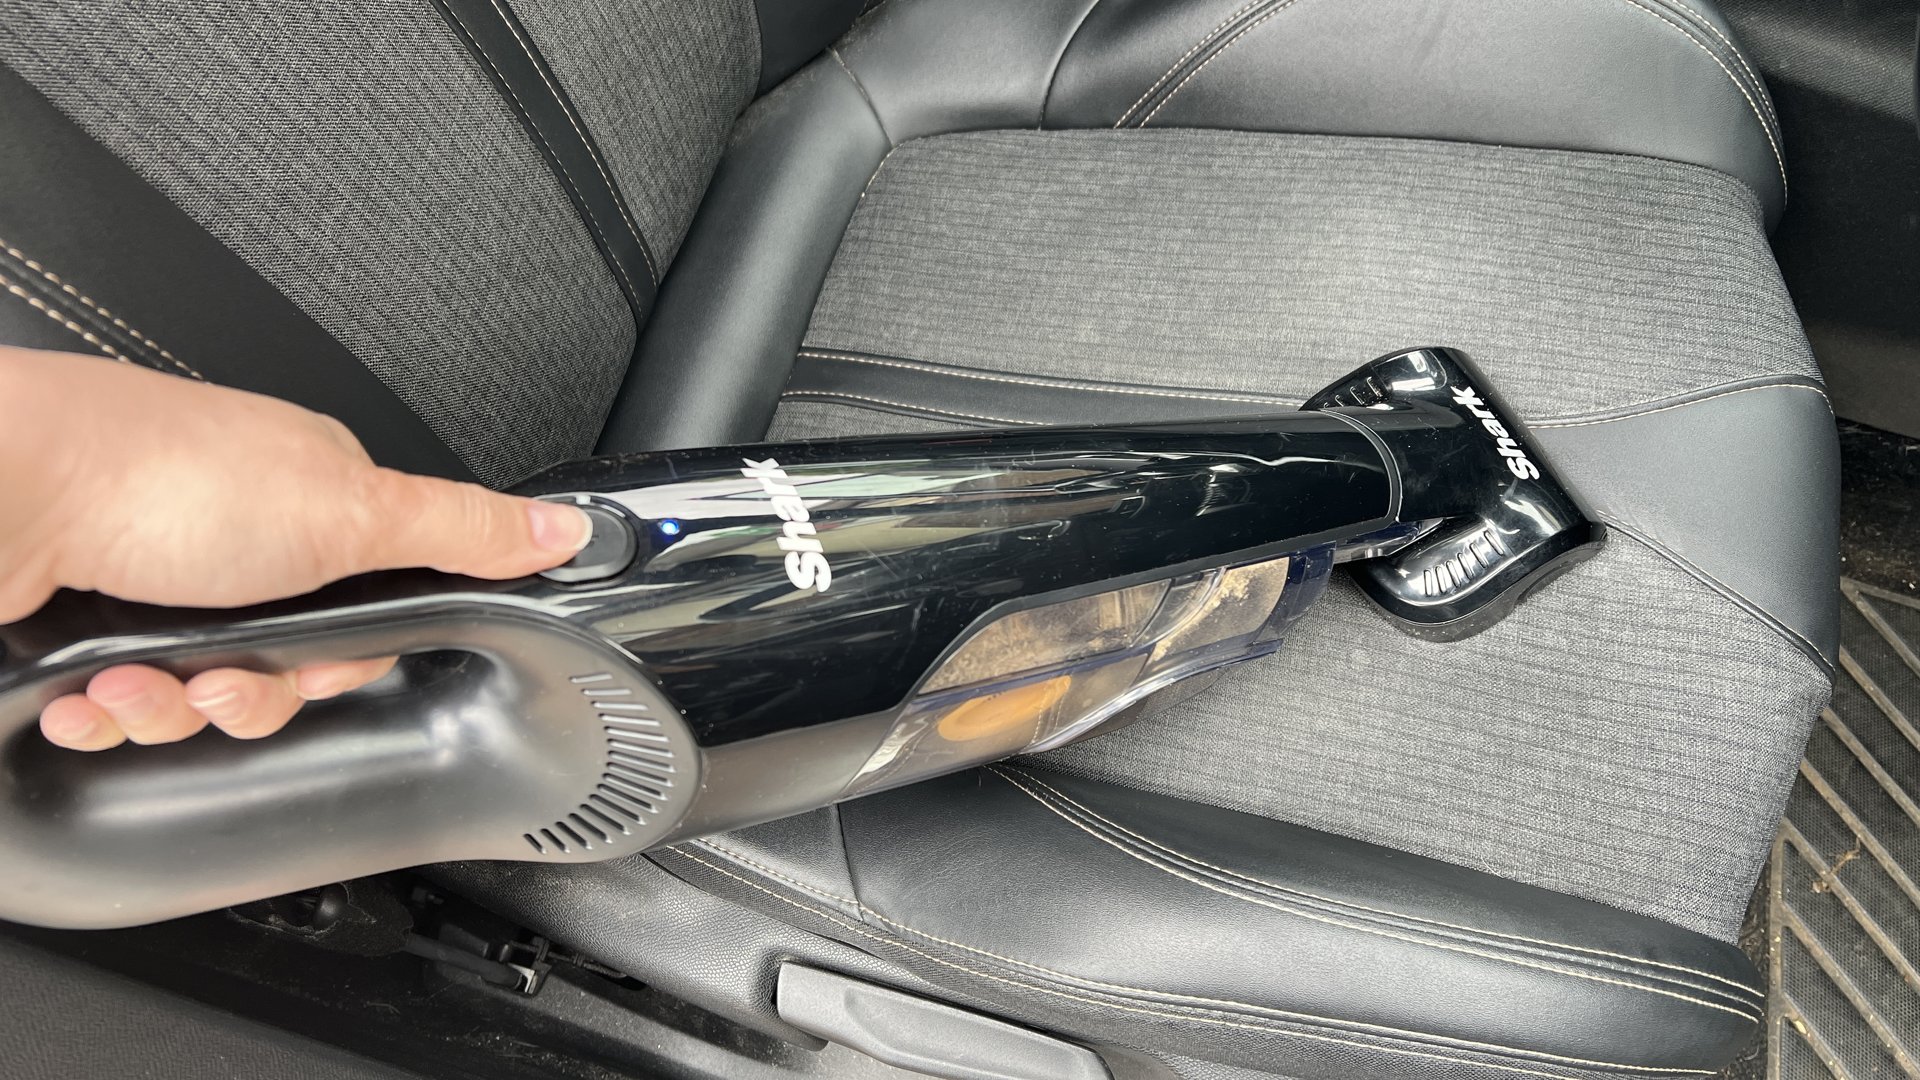 Aspiradora de mano Shark UltraCyclone Pet Pro Plus utilizada en un asiento de automóvil